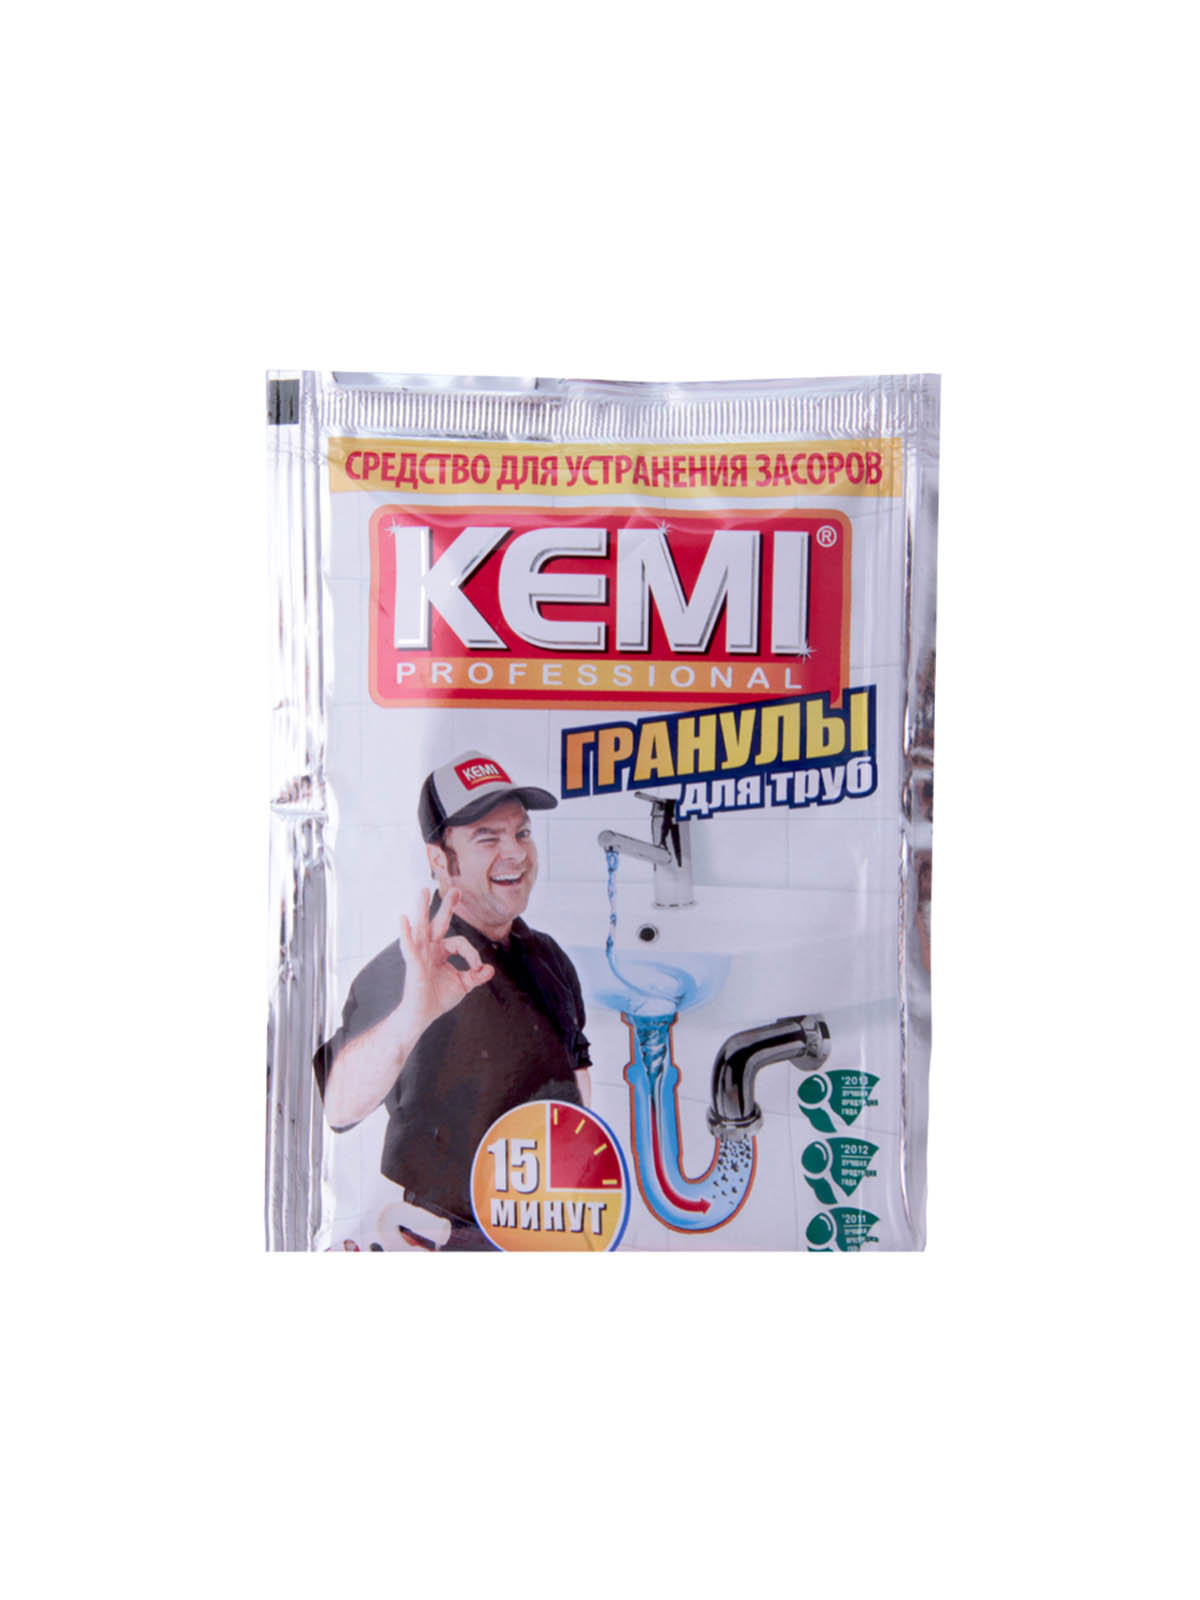 Средство для удаления засоров «KEMI professional - гранулы», П/э пакет - 70г